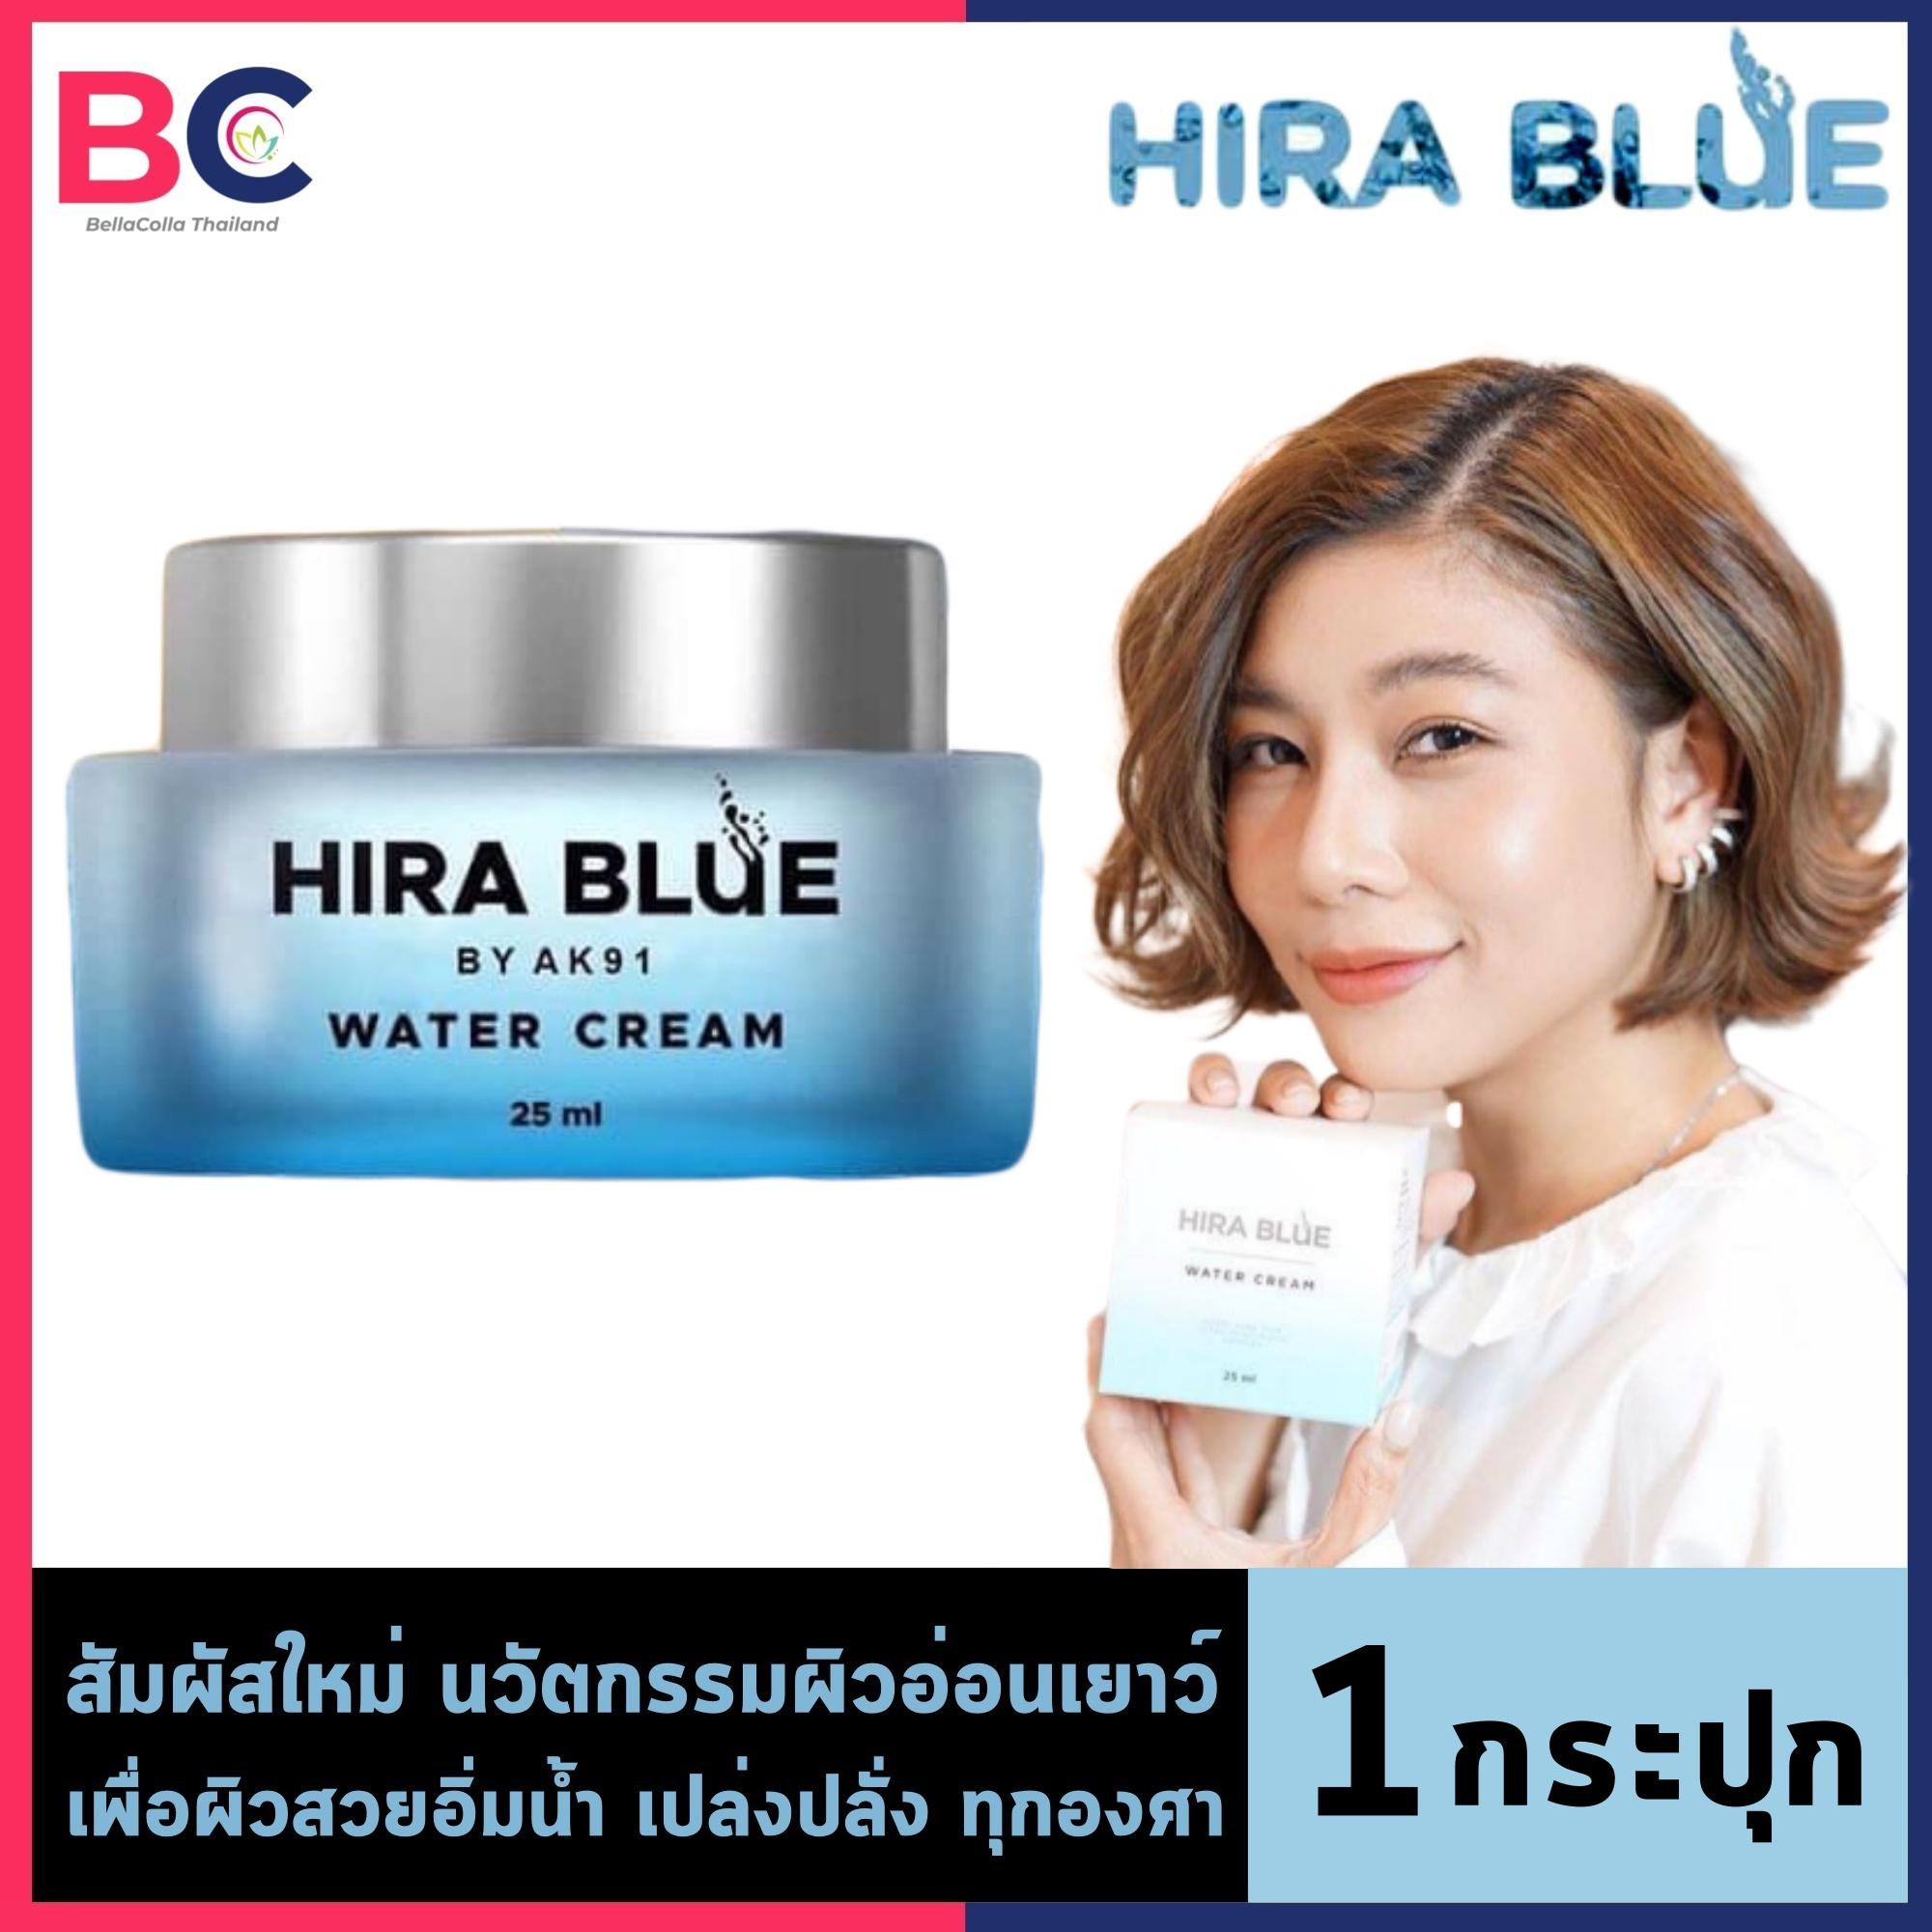 ครีมไฮร่าบลู วอเตอร์ [25 ml.] [1 ชิ้น] [ไม่มีแถม] Hira Blue Water Cream ครีม ครีมลดริ้วรอย ผิวชุ่มชื่น ครีมบำรุงผิวหน้า ครีมทาหน้า by BellaColla Thailand